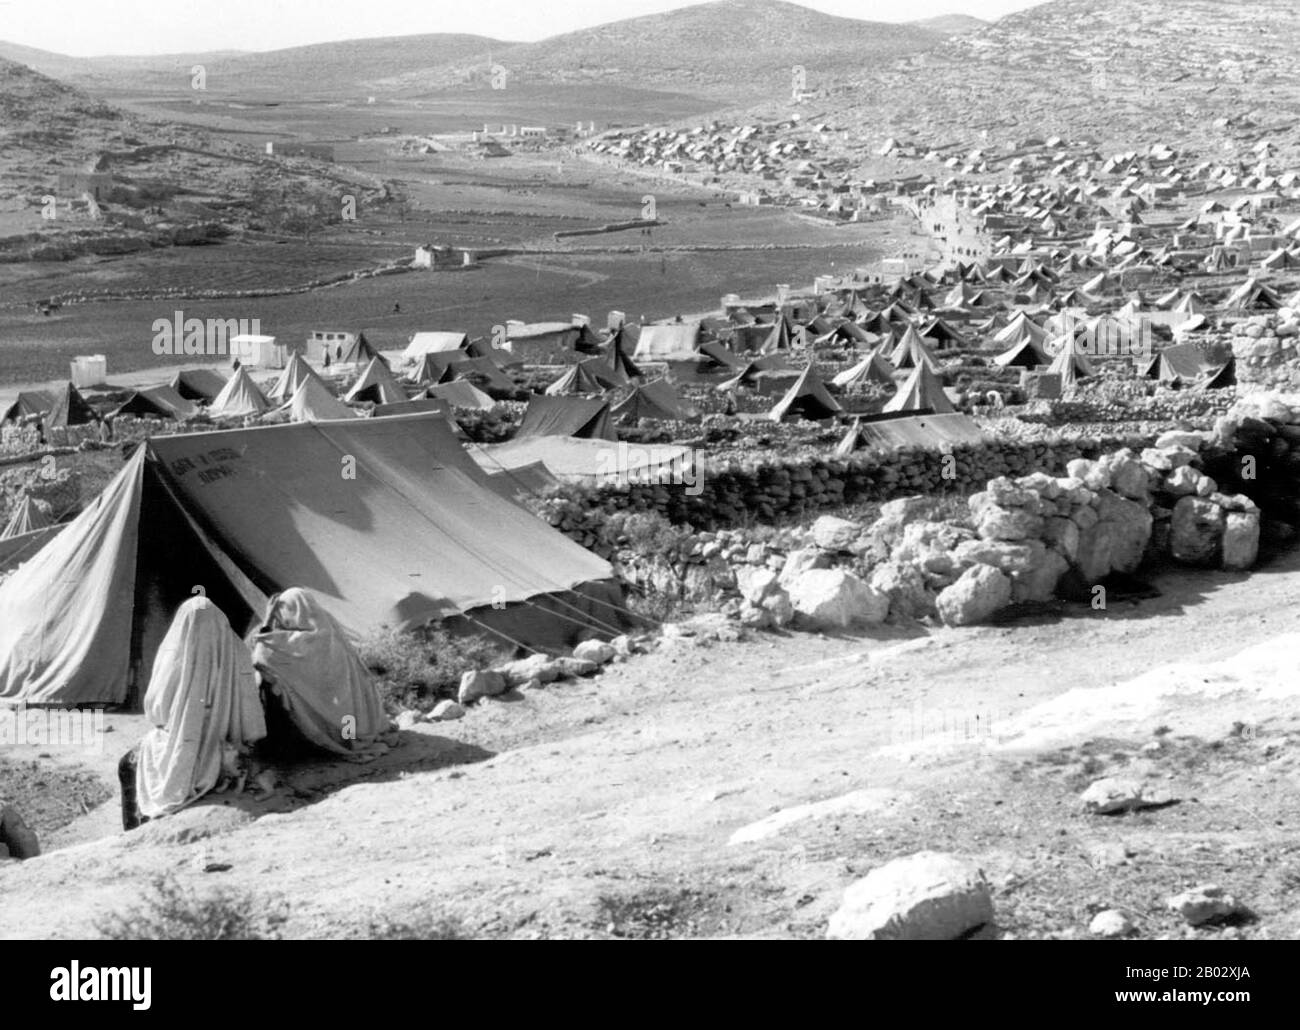 Die palästinensische Exodus von 1948, die auf Arabisch als Nakba (arabisch: An-Nakbah, Lit.'Katastrophe') bekannt ist, ereignete sich, als mehr als 700.000 palästinensische Araber flohen oder aus ihren Häusern vertrieben wurden, während des Bürgerkrieges von 1947 bis 1948 in Mandatory Palestine und dem arabisch-israelischen Krieg von 1948. Die genaue Zahl der Flüchtlinge ist umstritten, aber rund 80 Prozent der arabischen Einwohner von dem, was Israel wurde (50 Prozent der arabischen Gesamtbevölkerung von obligatorischem Palästina) verließen oder wurden aus ihren Häusern vertrieben. Später im Krieg wurden Palästinenser im Rahmen des "Plans Dalet" in einer Politik der "ethnischen Säuberung" zwangsweise vertrieben Stockfoto